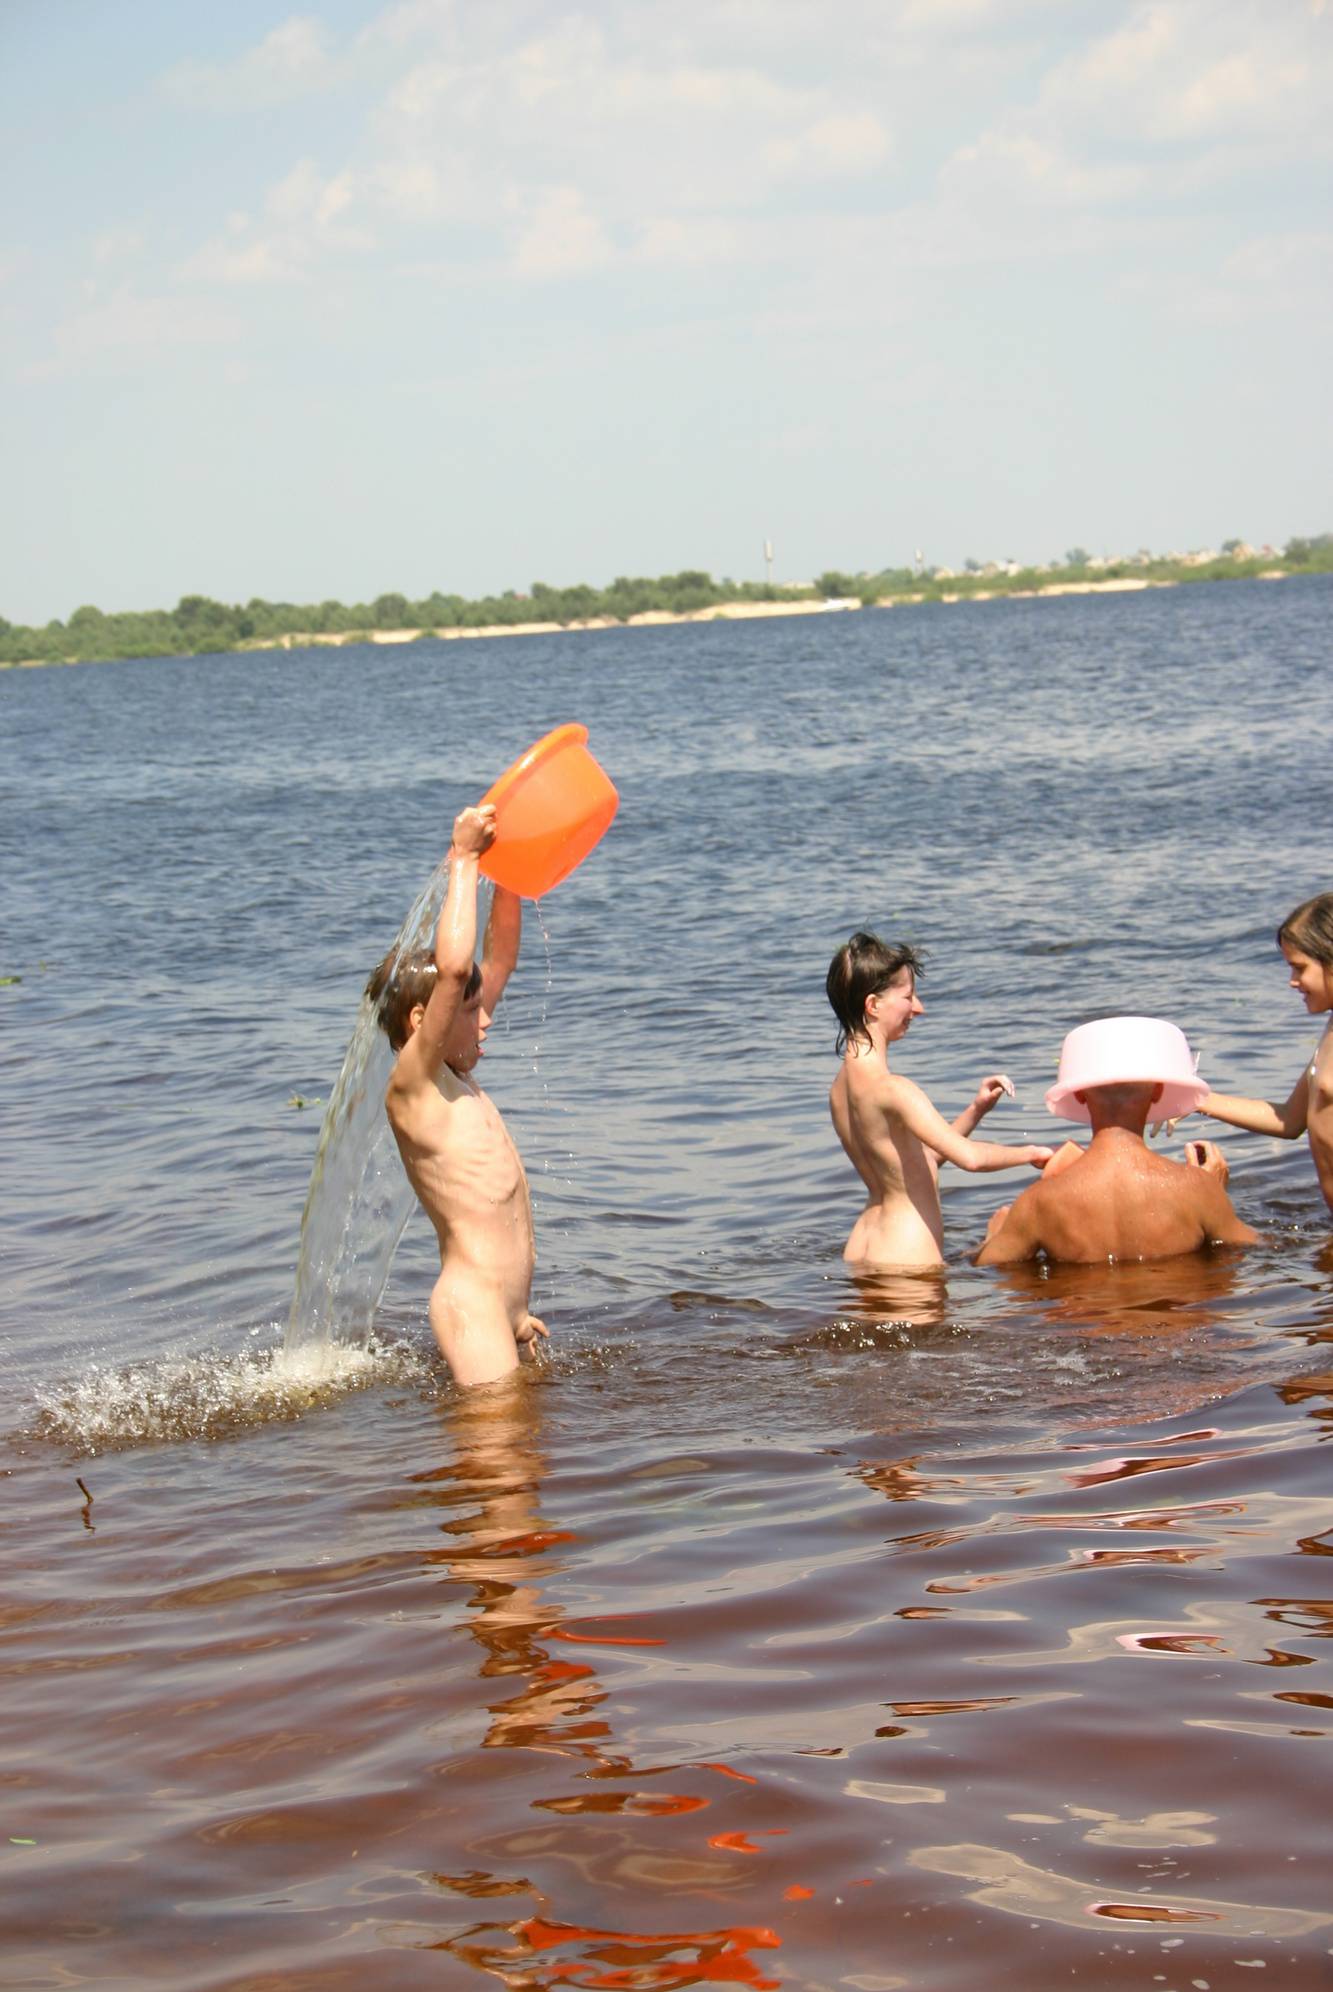 Nudist Pics Kiev Water-Front Bathing - 2